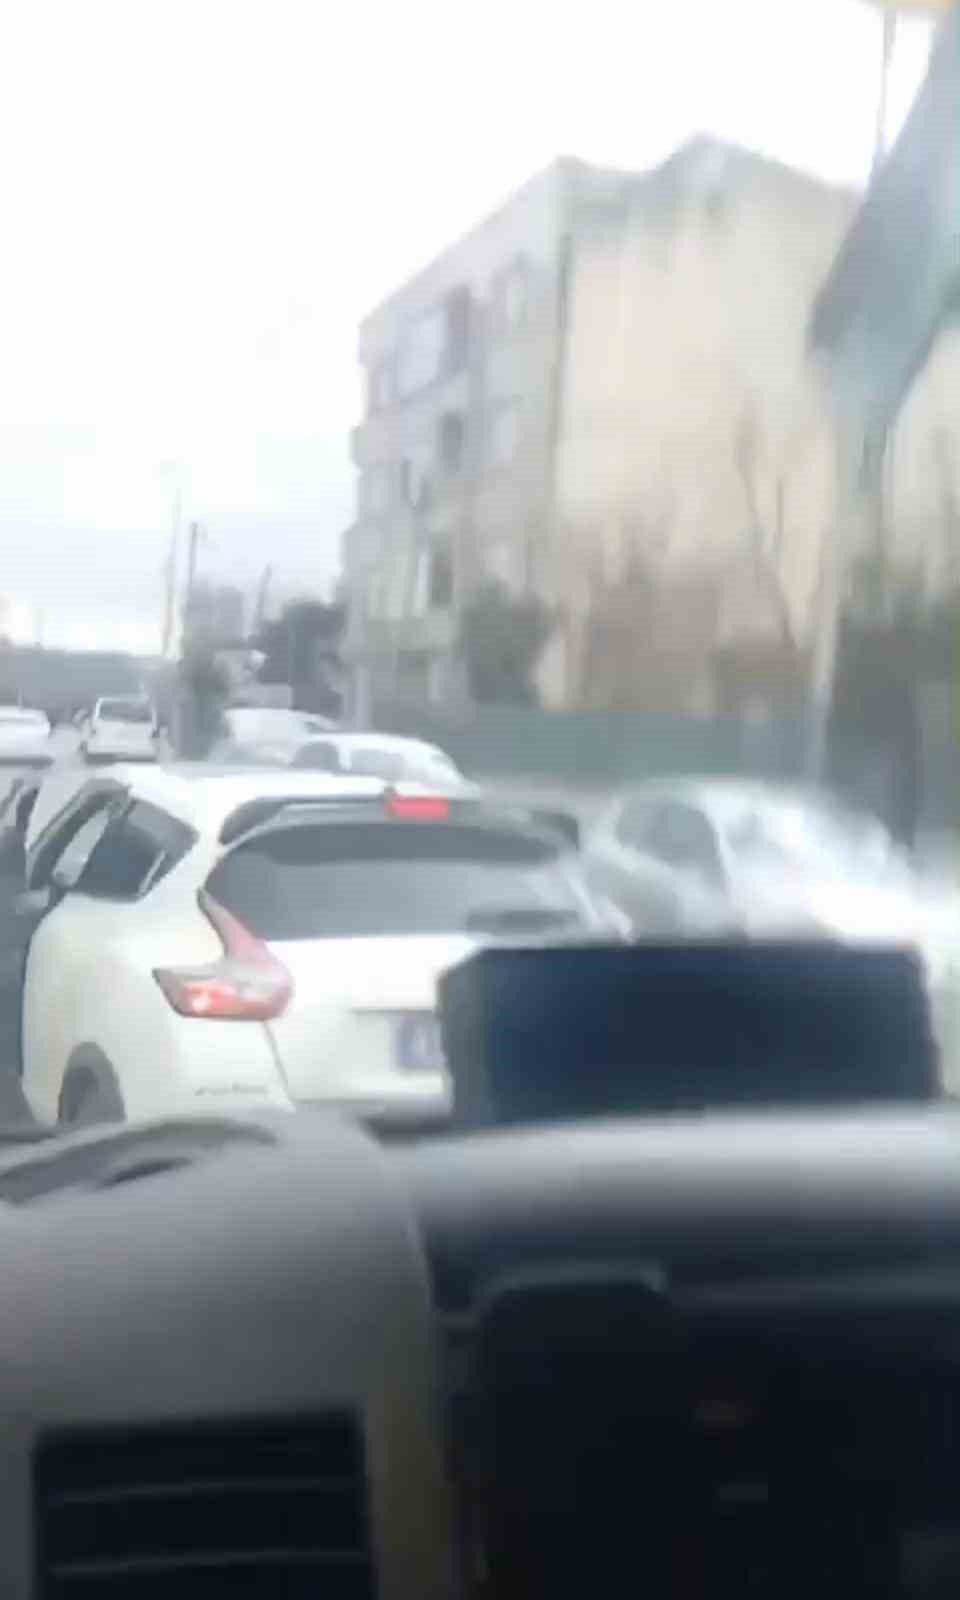 İstanbul’da okul servisi şoförünün yaşadığı korku dolu anlar kamerada: “Arabada çocuk var”
